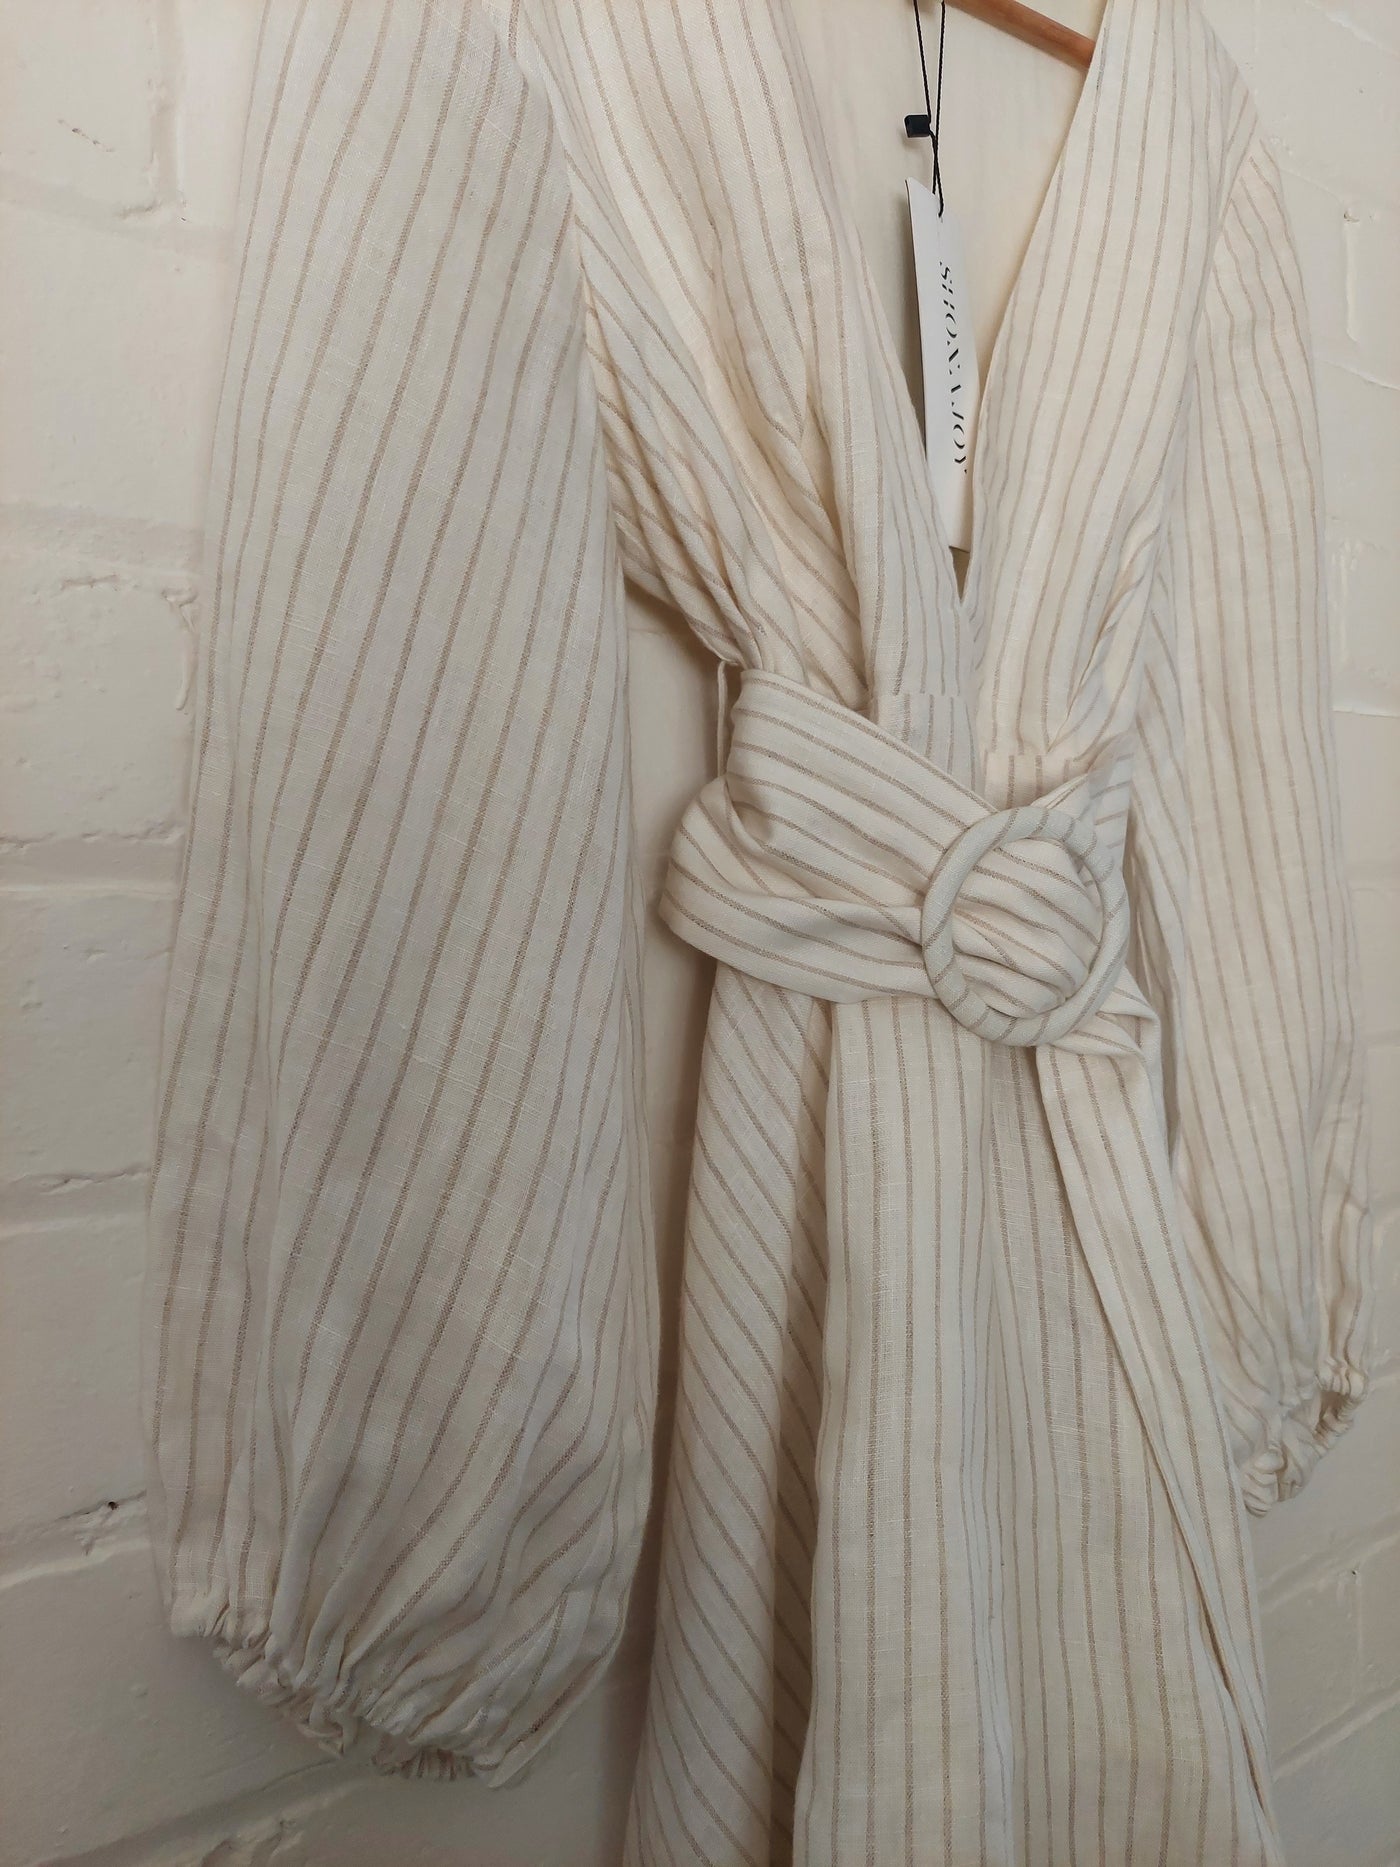 Shona Joy BNWT 'Isadora' Plunge Mini Dress with Belt, Size 14